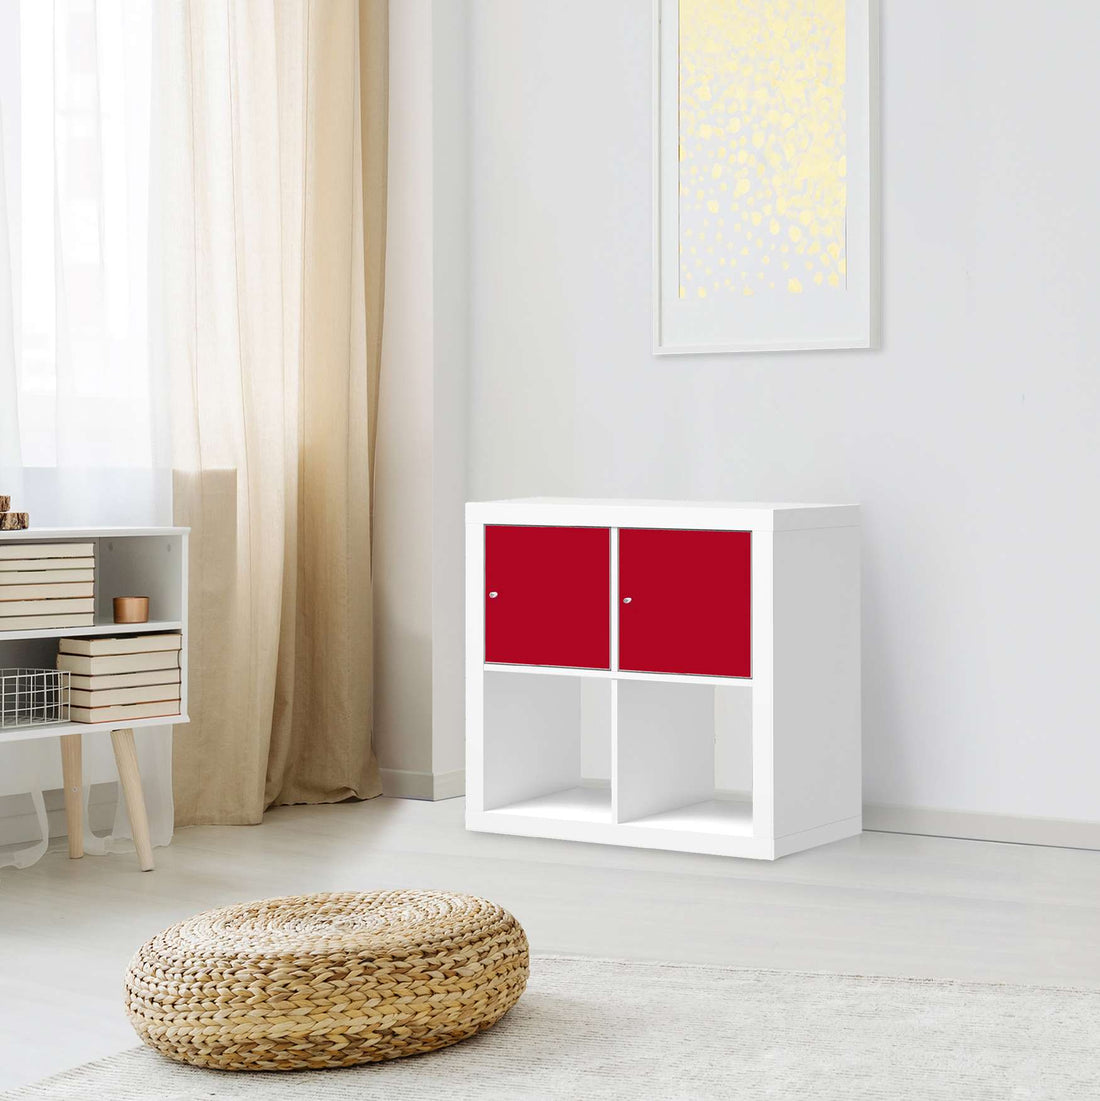 Möbel Klebefolie Rot Dark - IKEA Expedit Regal 2 Türen Quer - Wohnzimmer